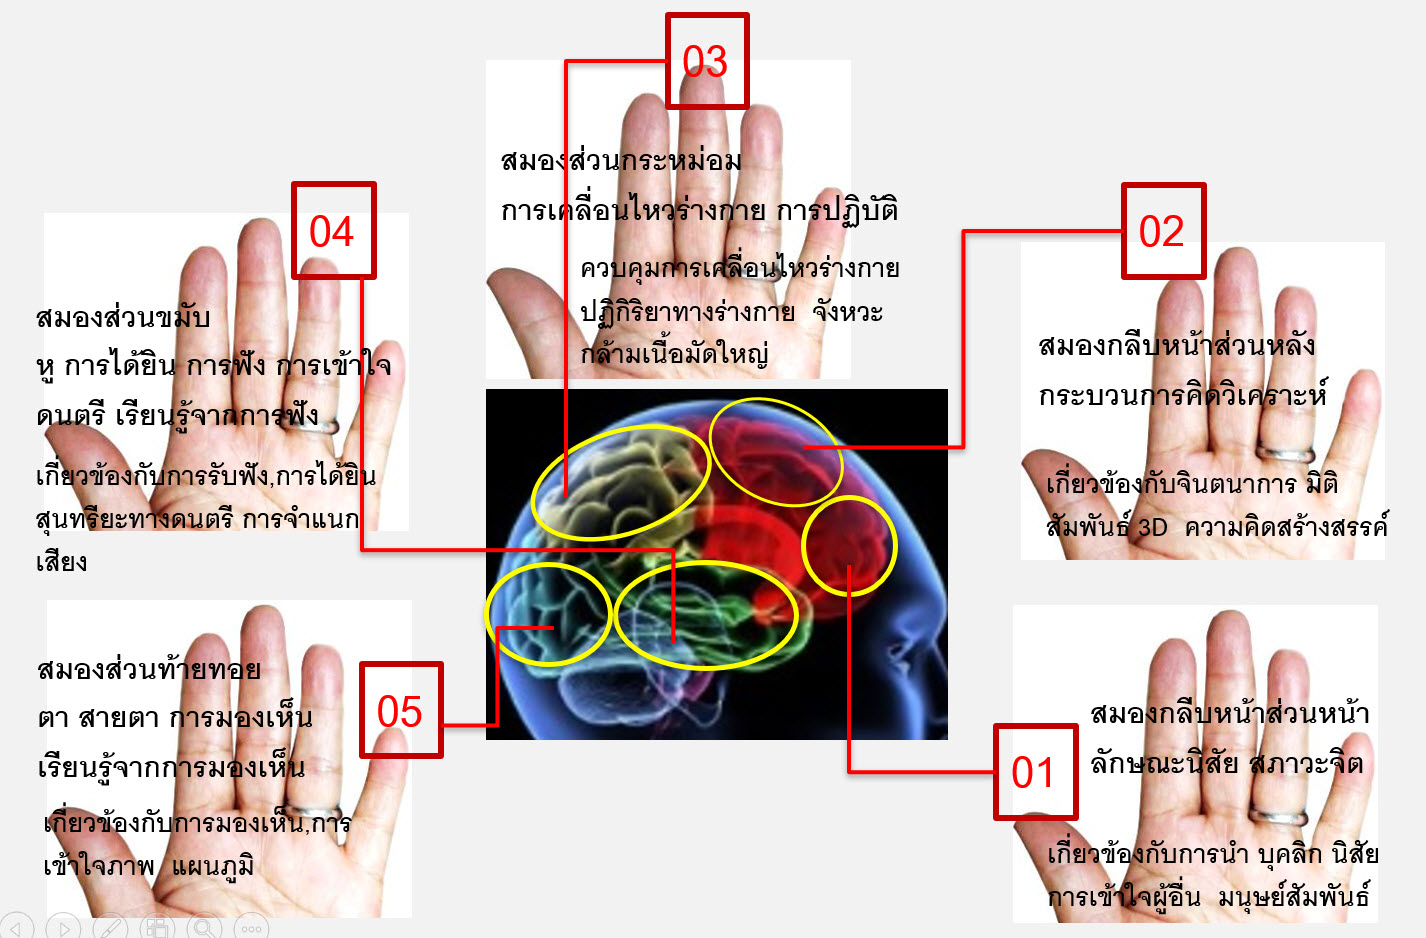 นิ้วมือซ้ายสัมพันธ์กับสมองซีกขวา ปัญญา 5 ประเภทที่นิ้วมือซ้าย